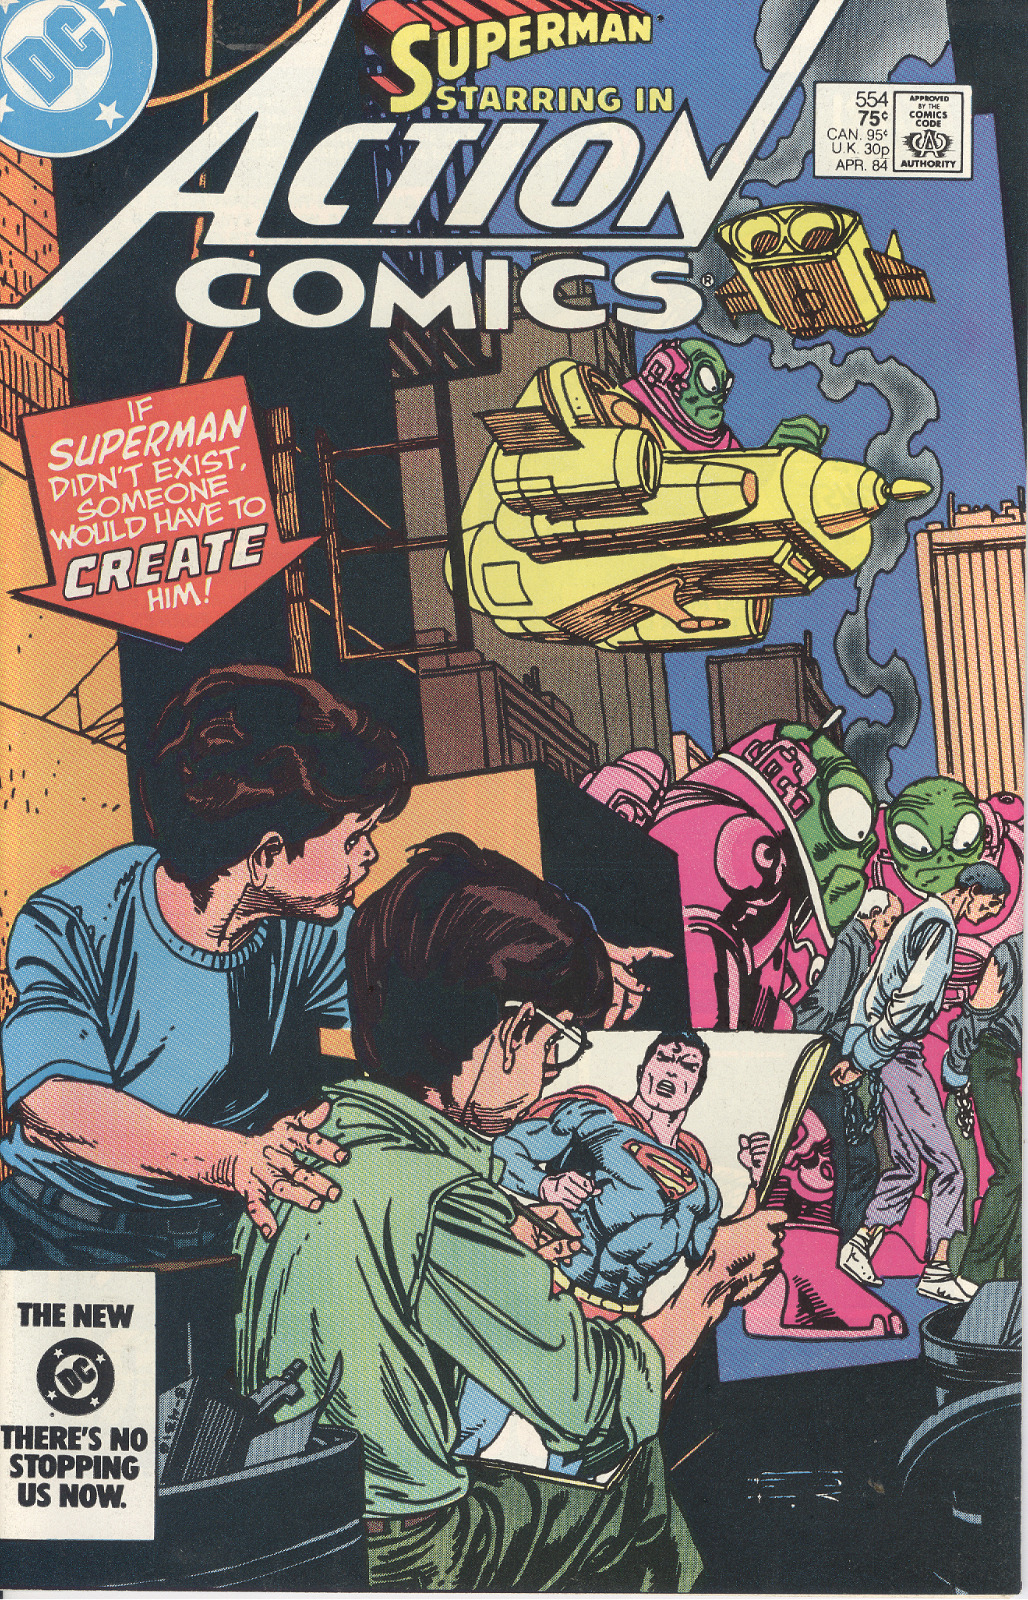 DC Comics: Superman #554 April 1984